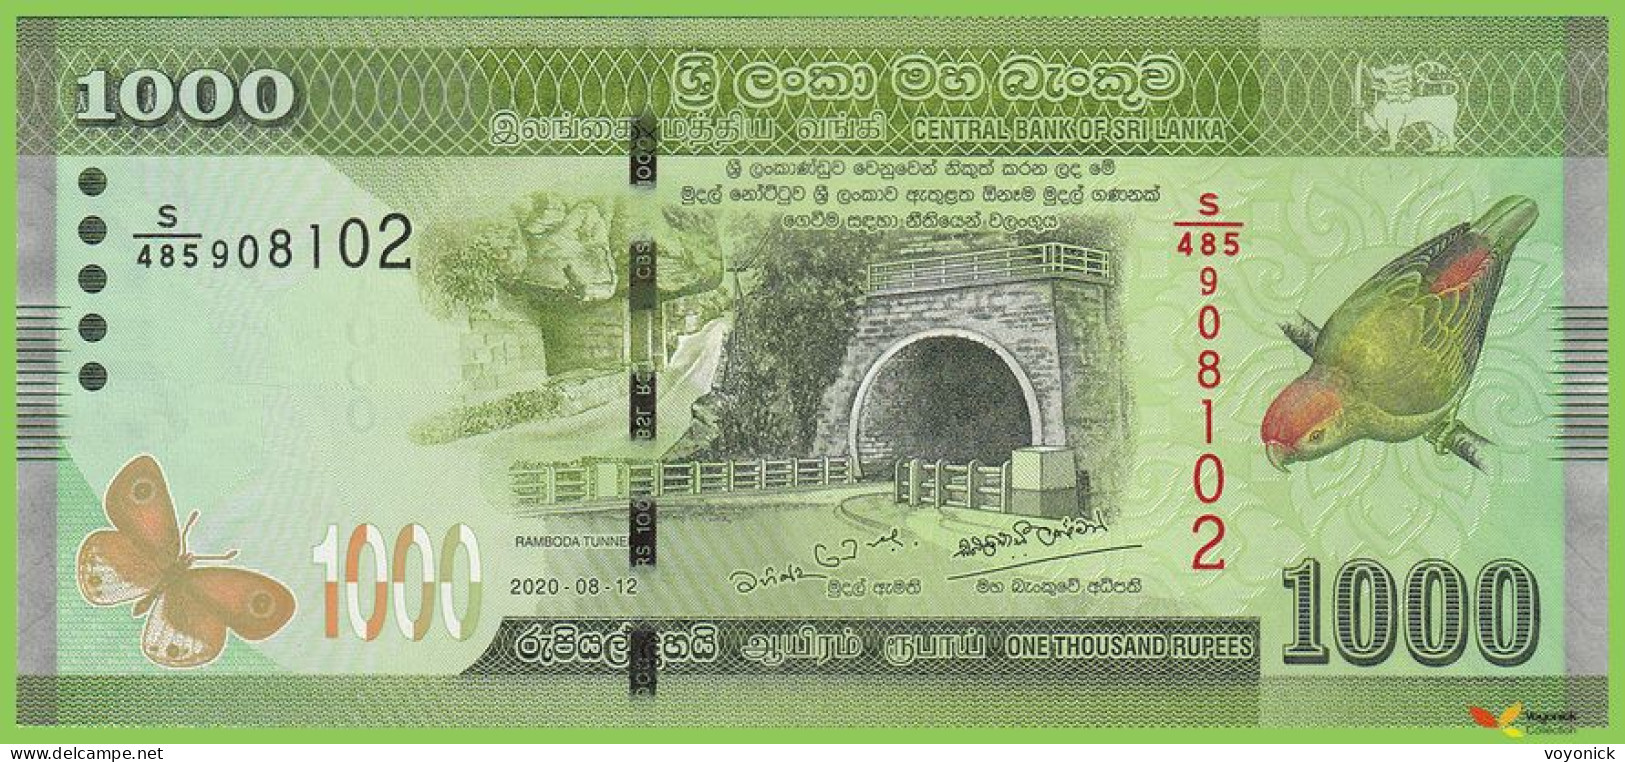 Voyo SRI LANKA 1000 Rupees 2020 P127g B127f S/485 UNC - Sri Lanka